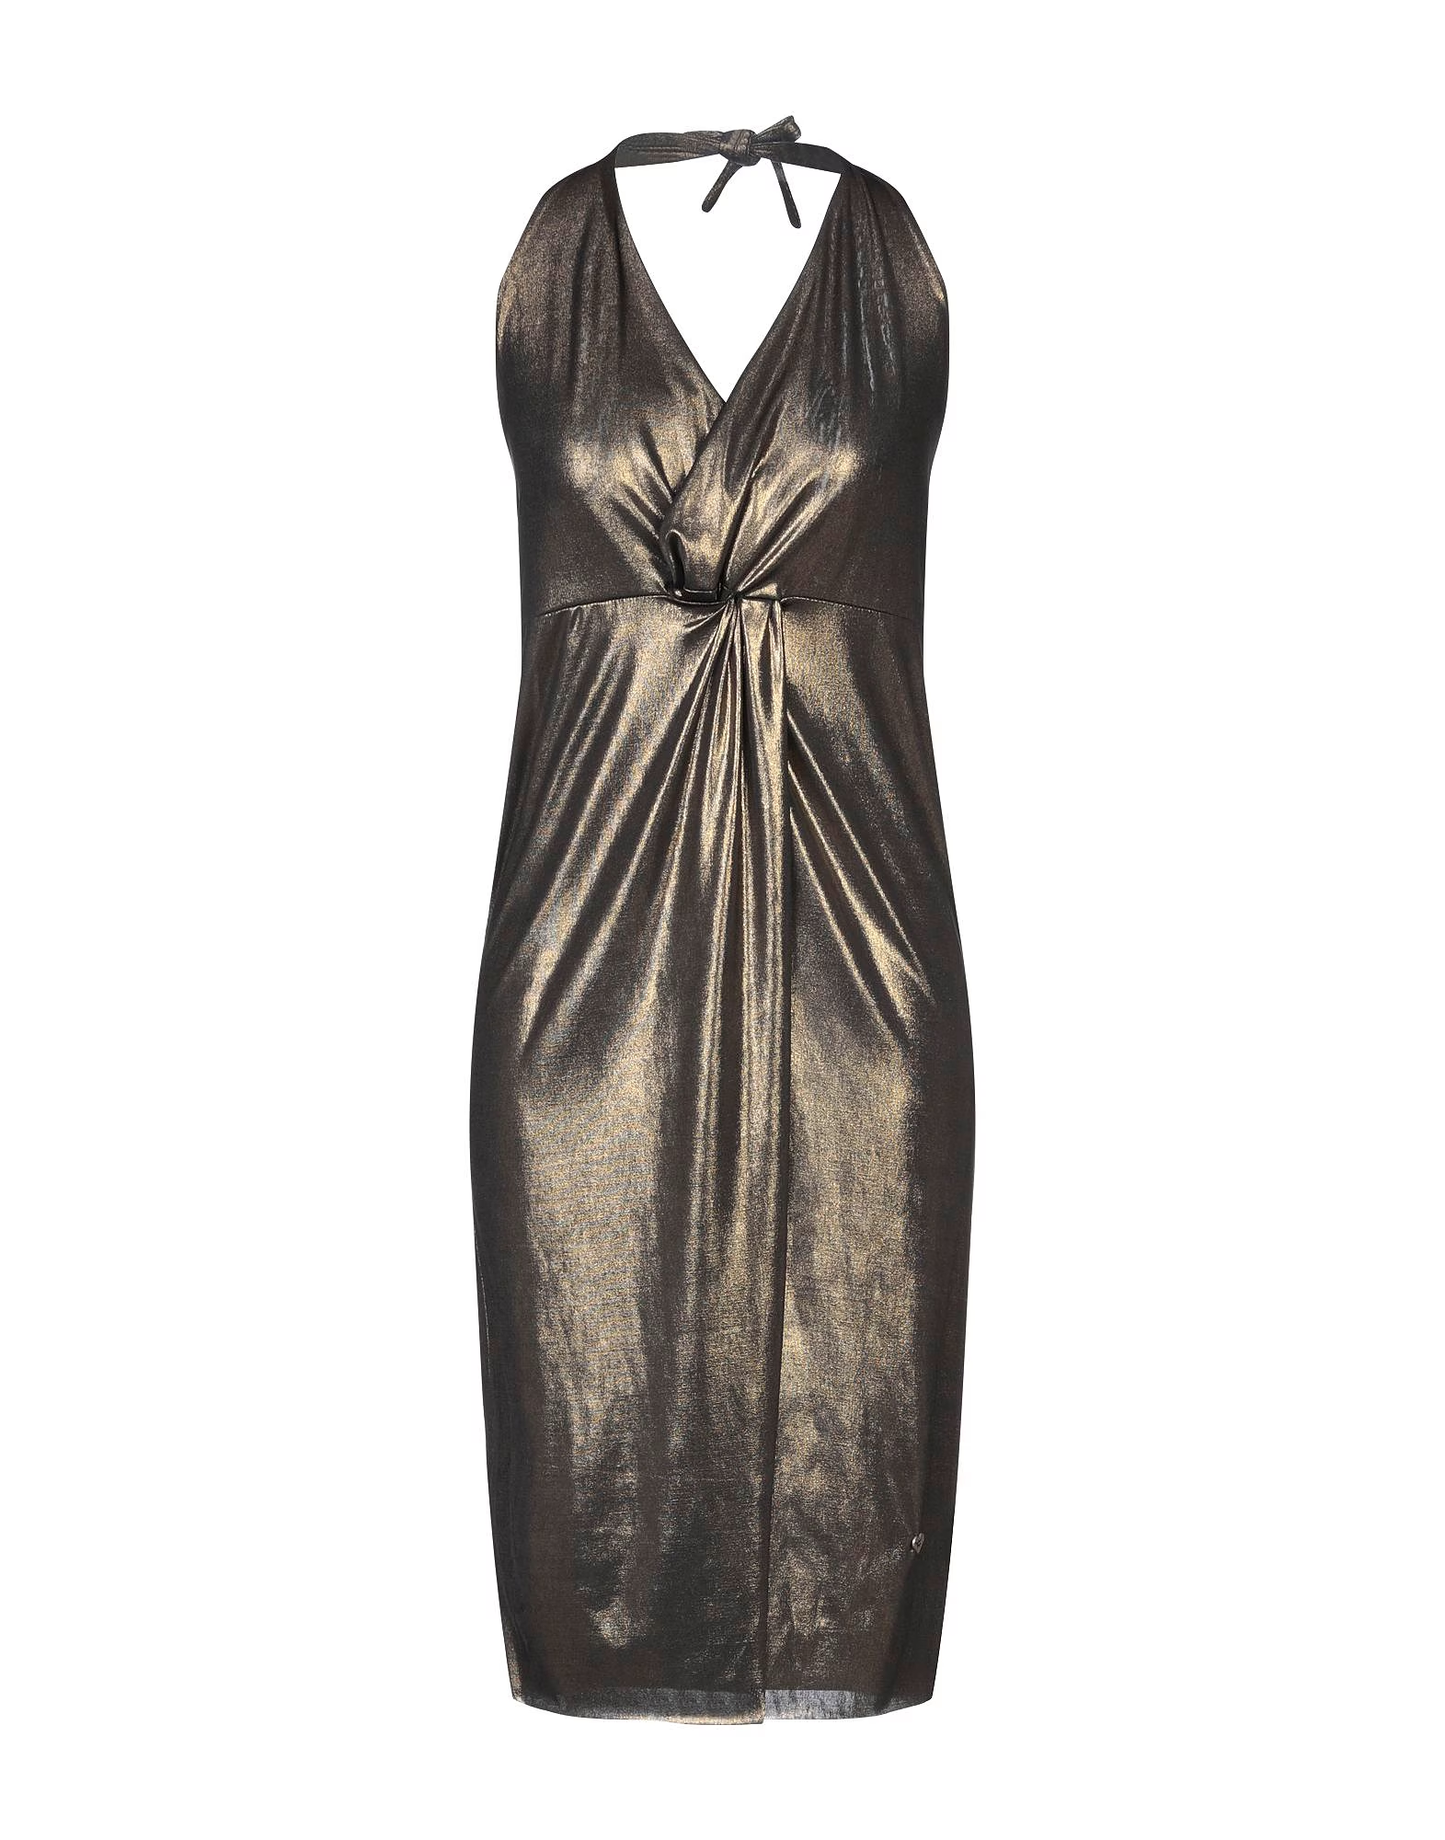 PARIOLI DRESSES - Parioli Short Dress - Dark Gold